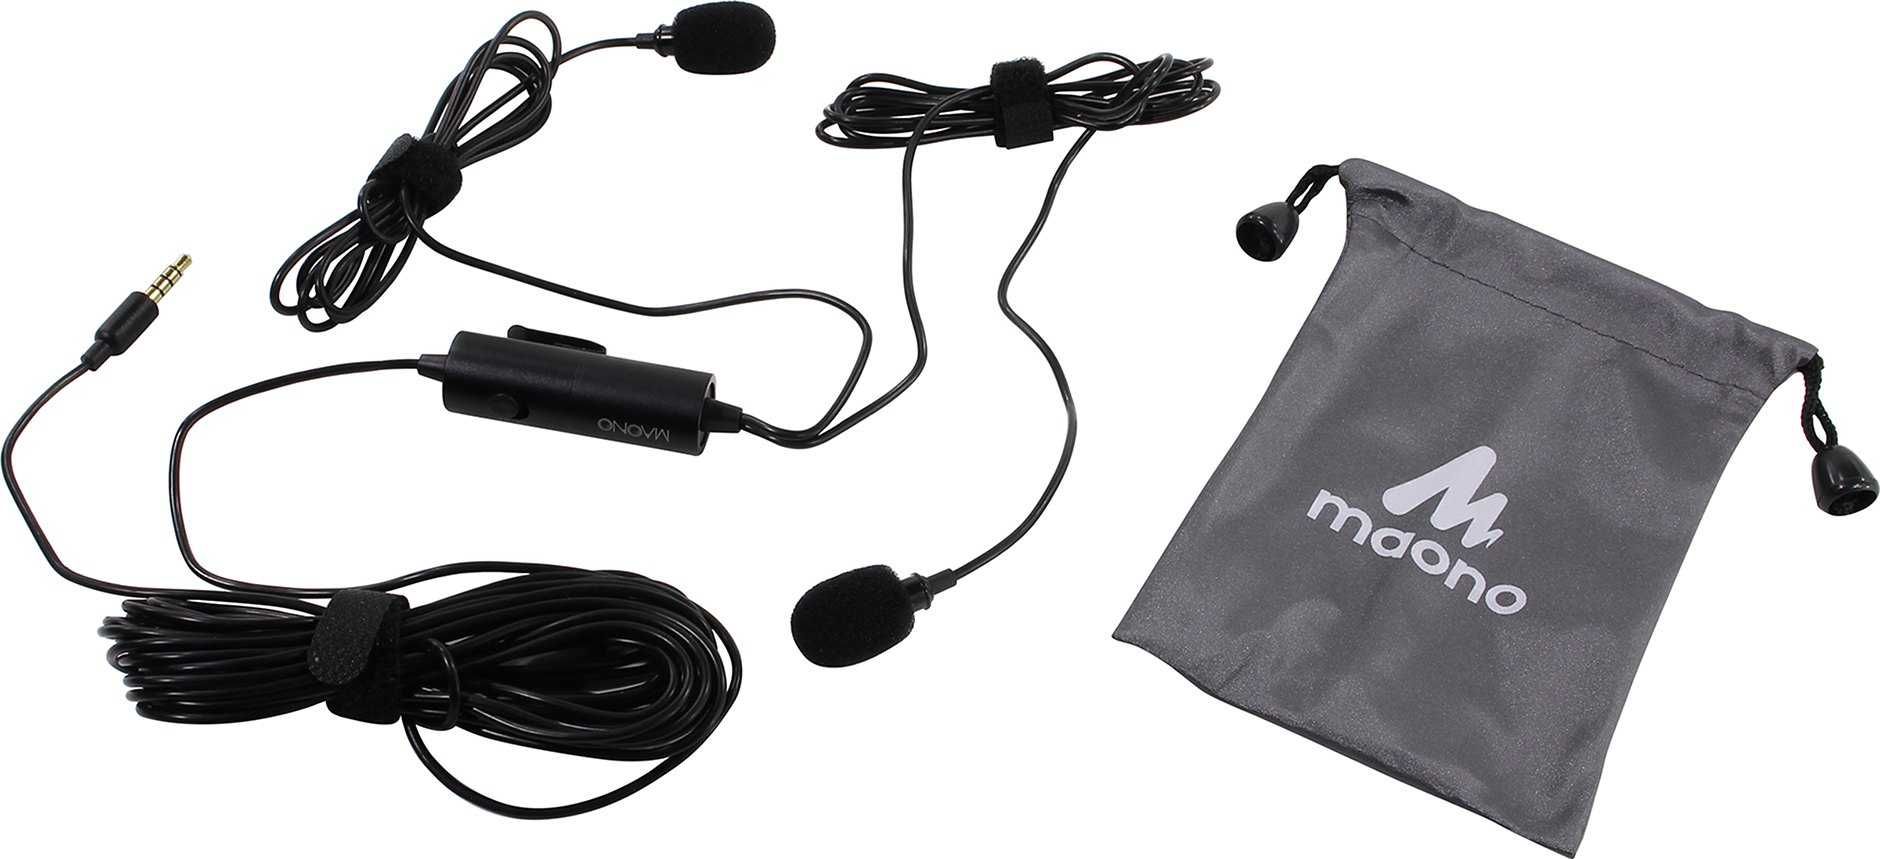 Двойной микрофон для смартфона или фото- и видеотехники Maono AU-200